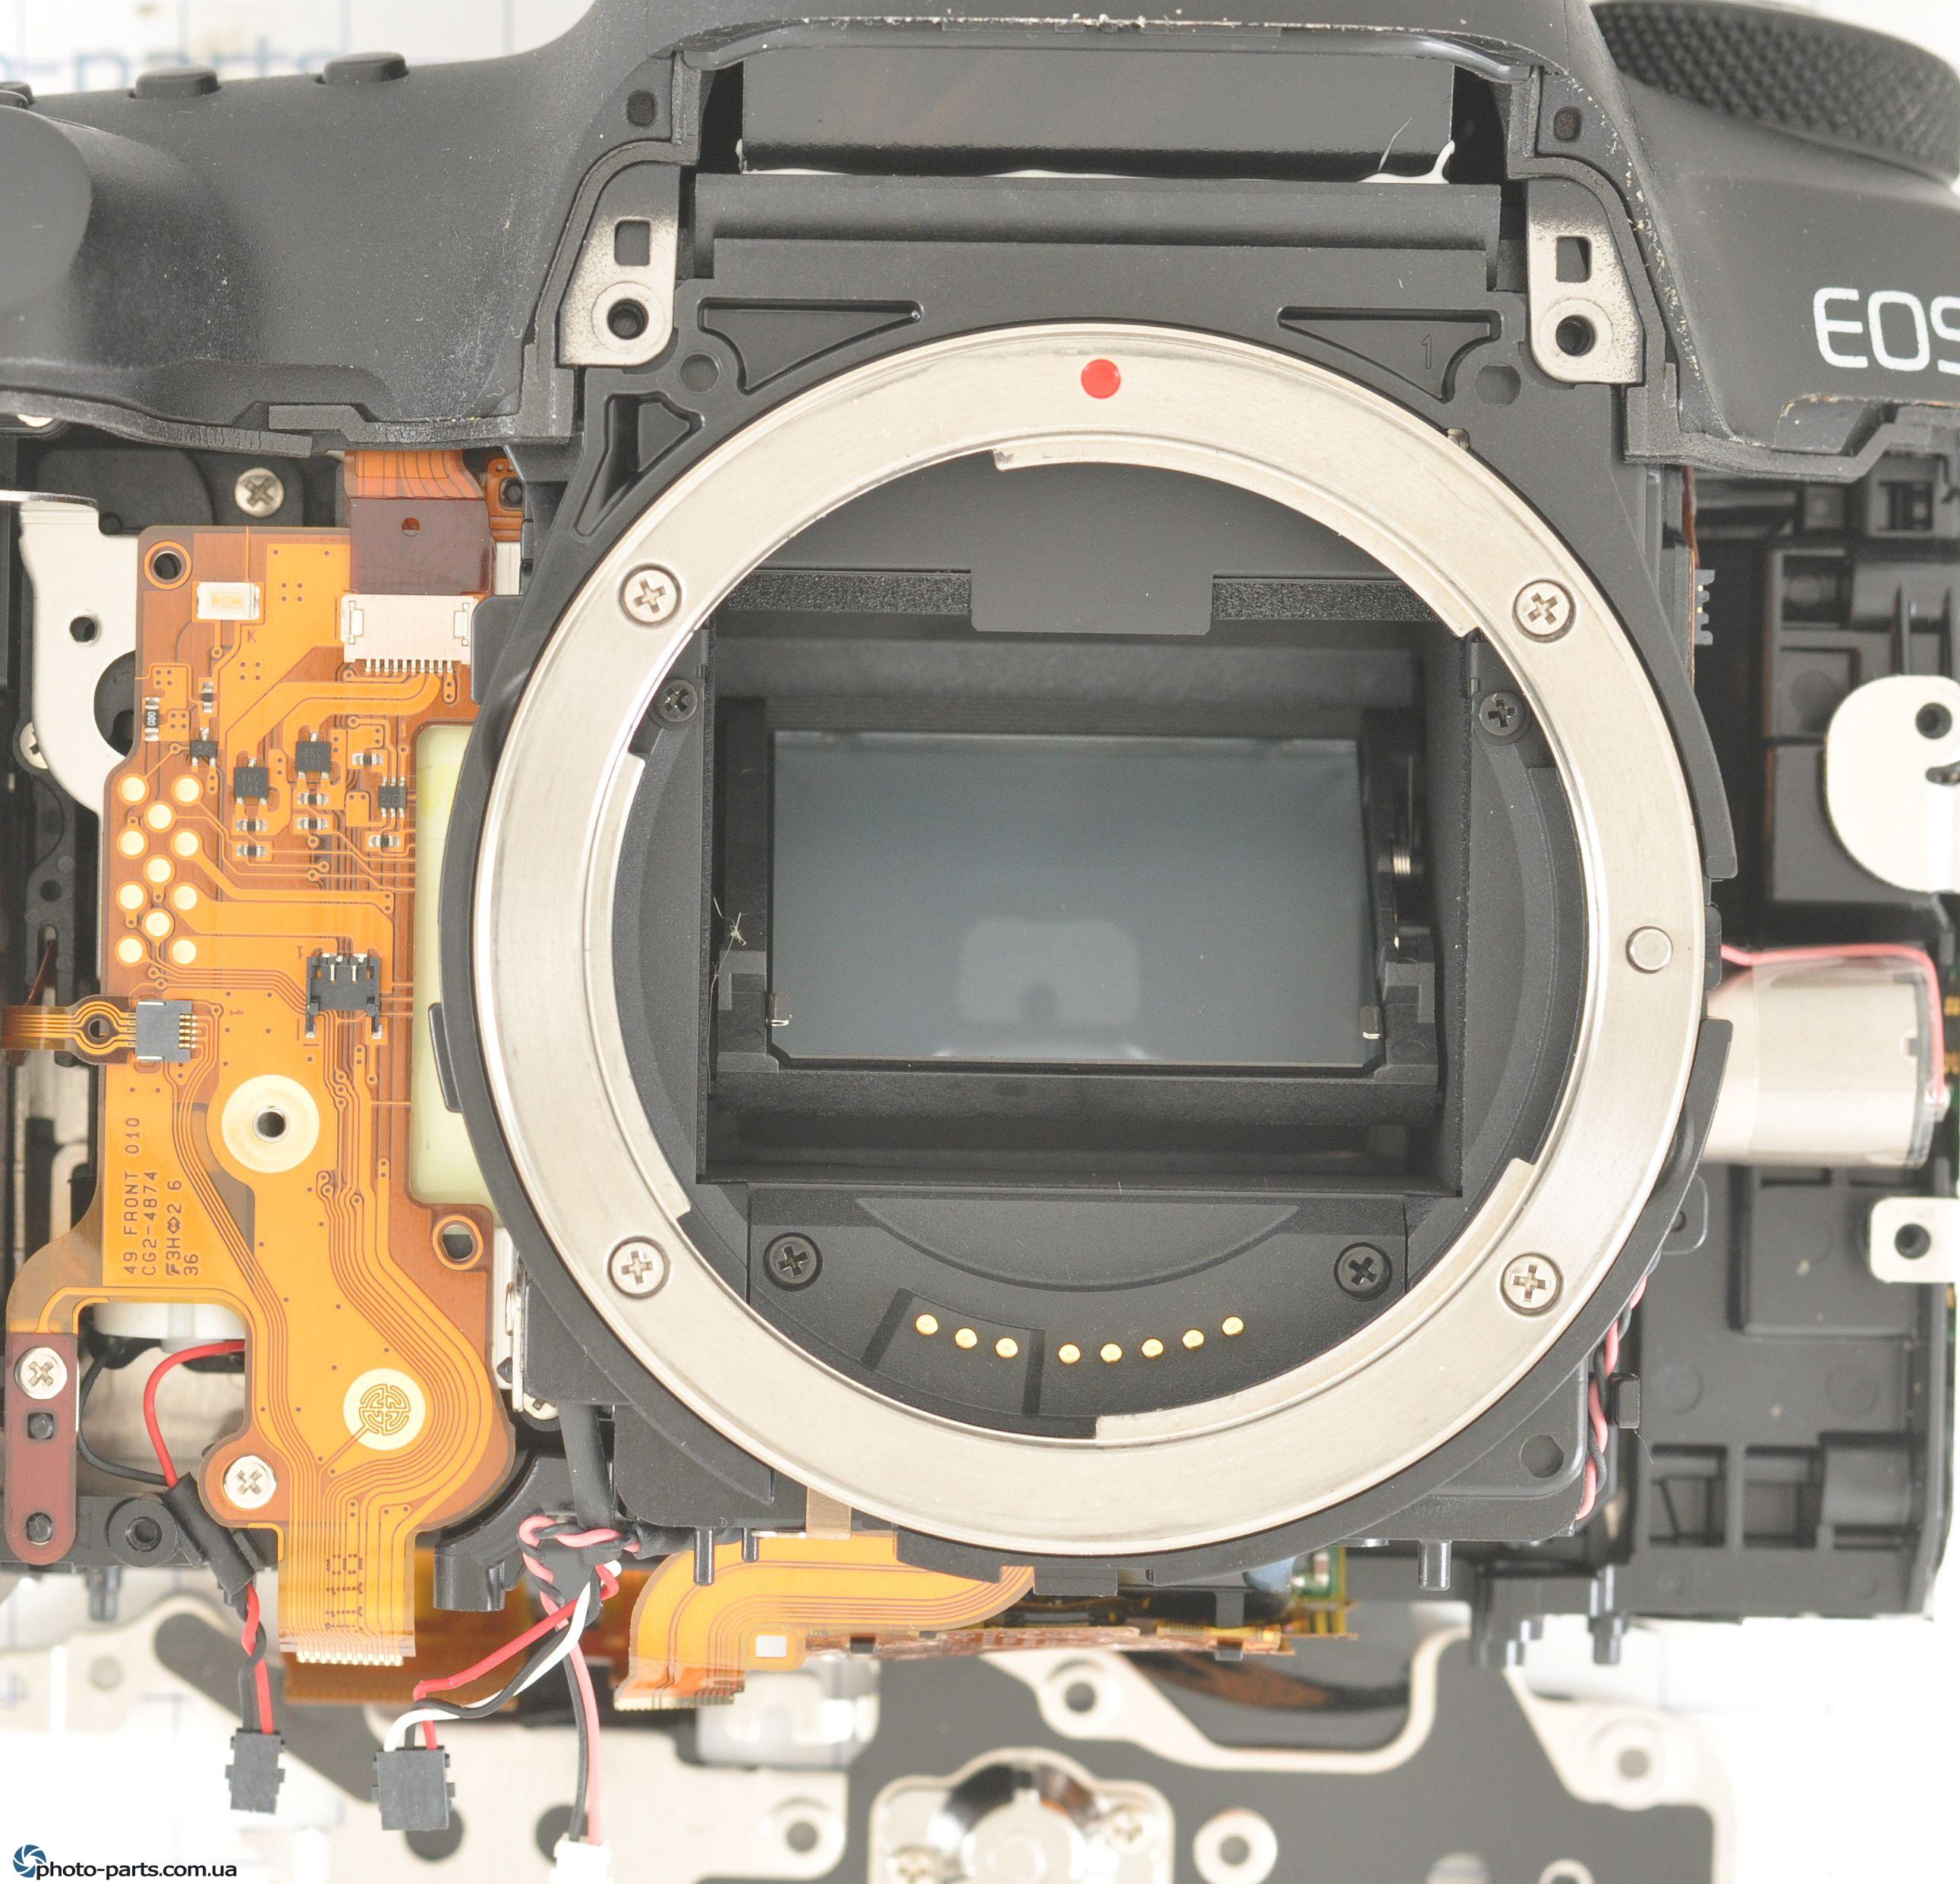 ZOOM Canon 5D4 mirror box